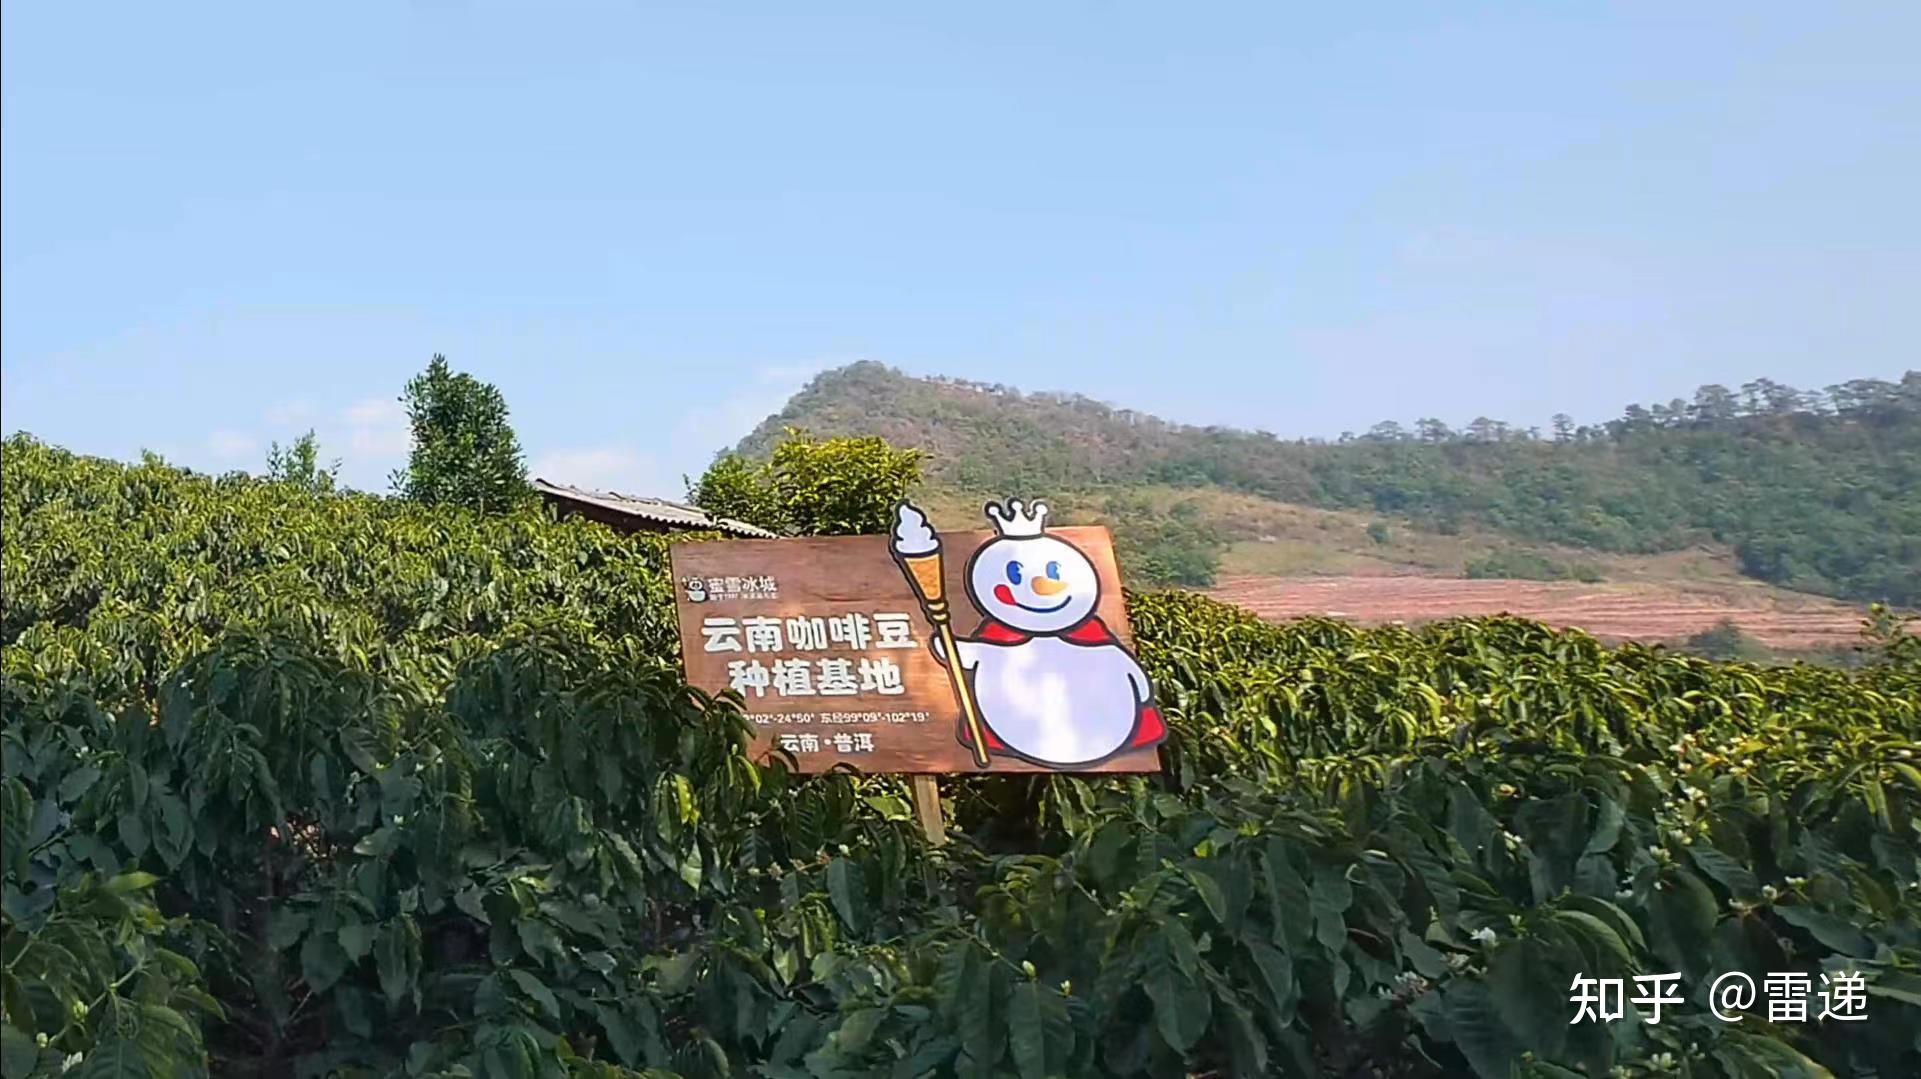 蜂场 – 杭州常青蜂业有限公司